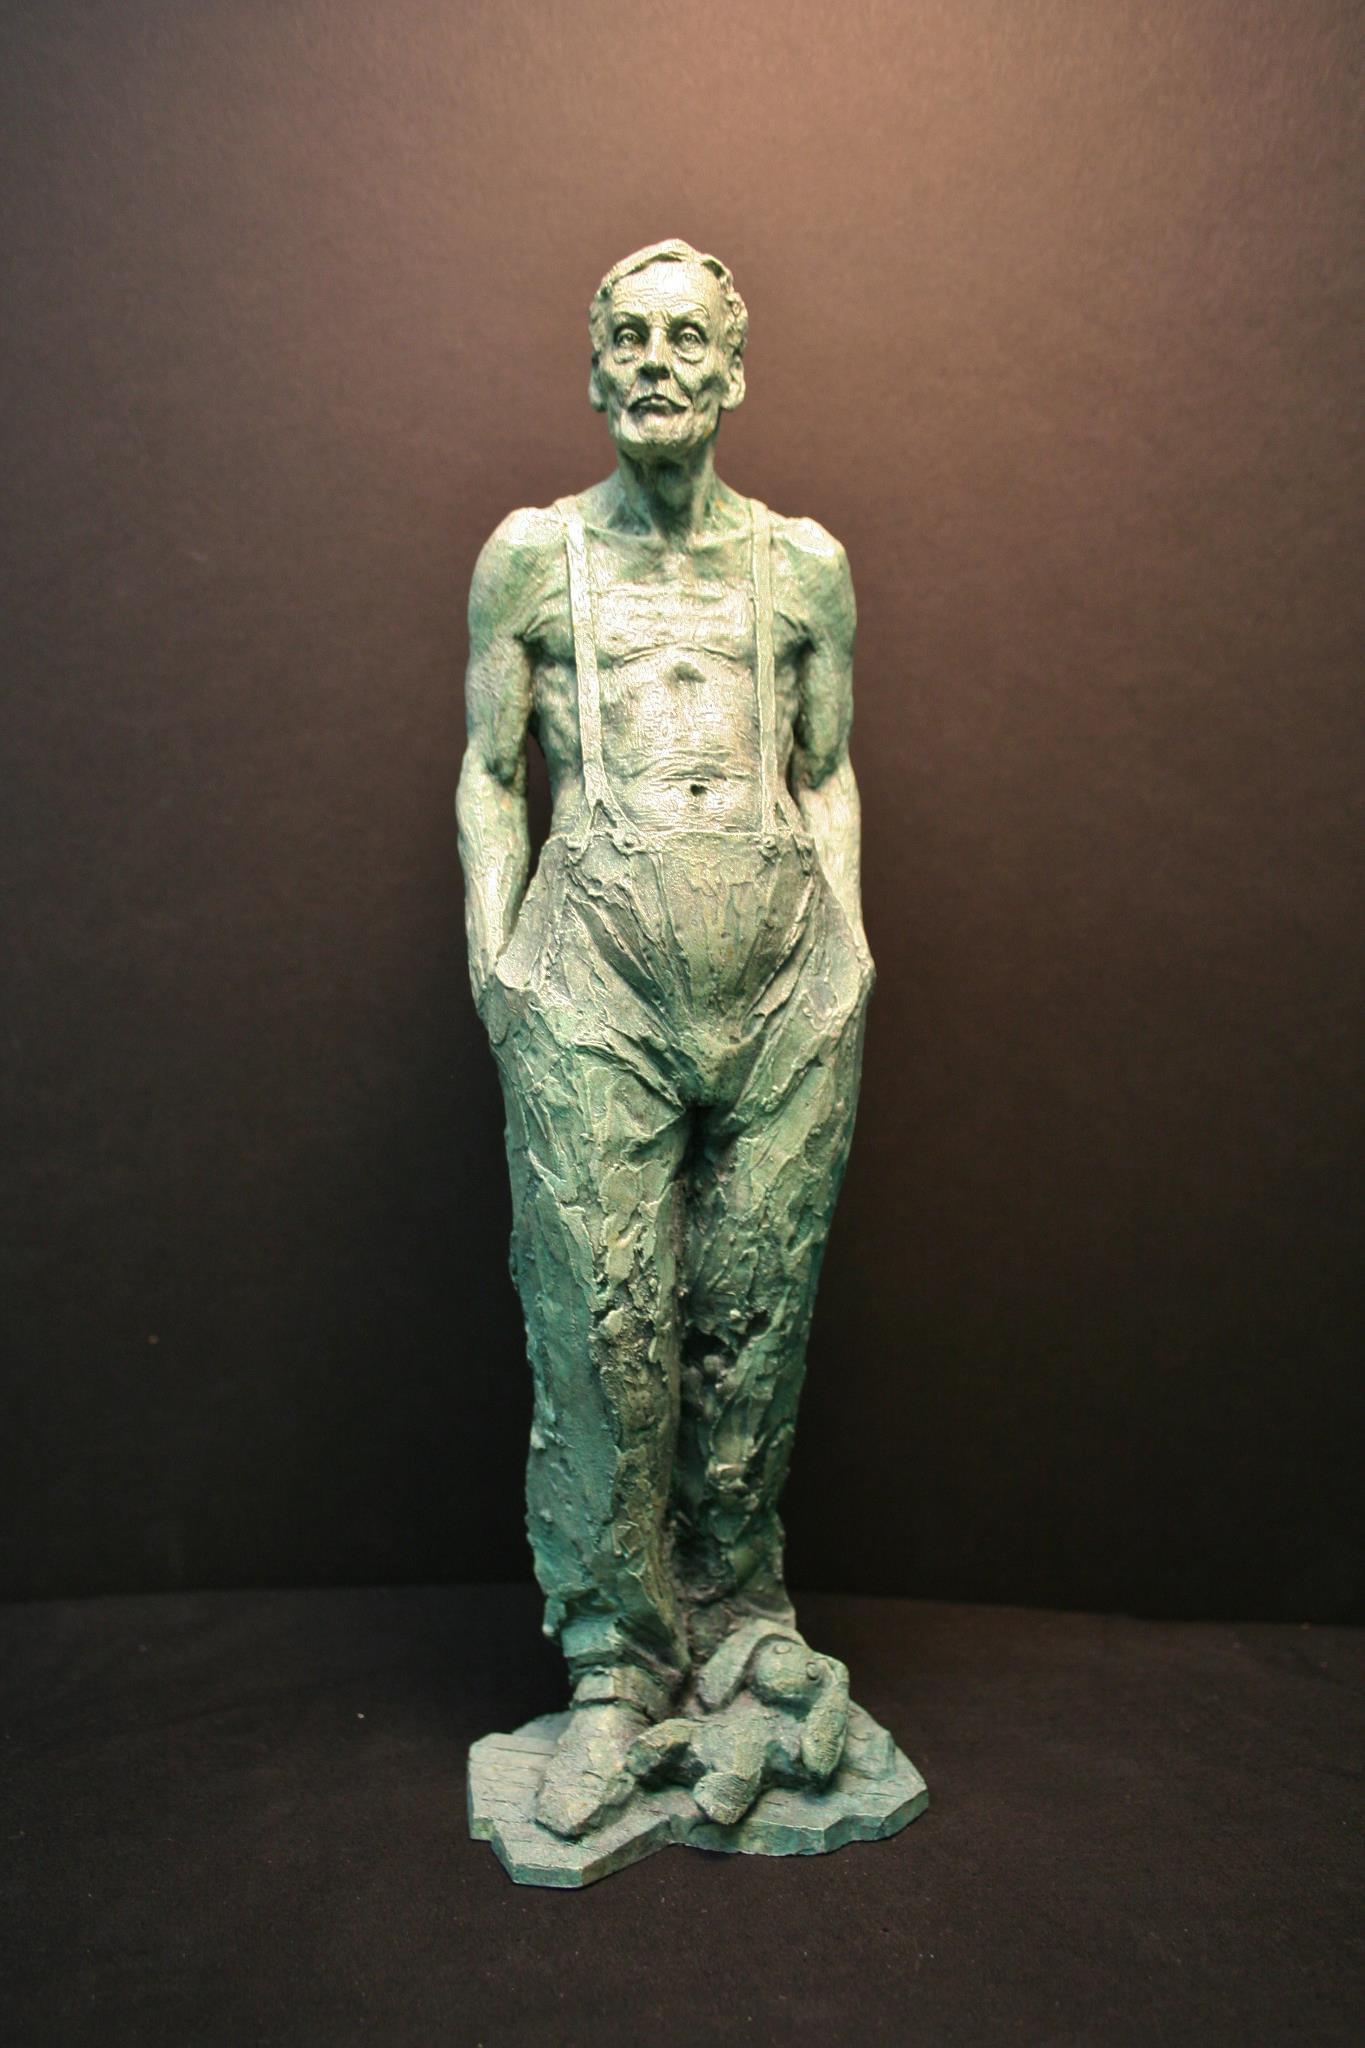 Albert - Sculpture by Craig Campbell